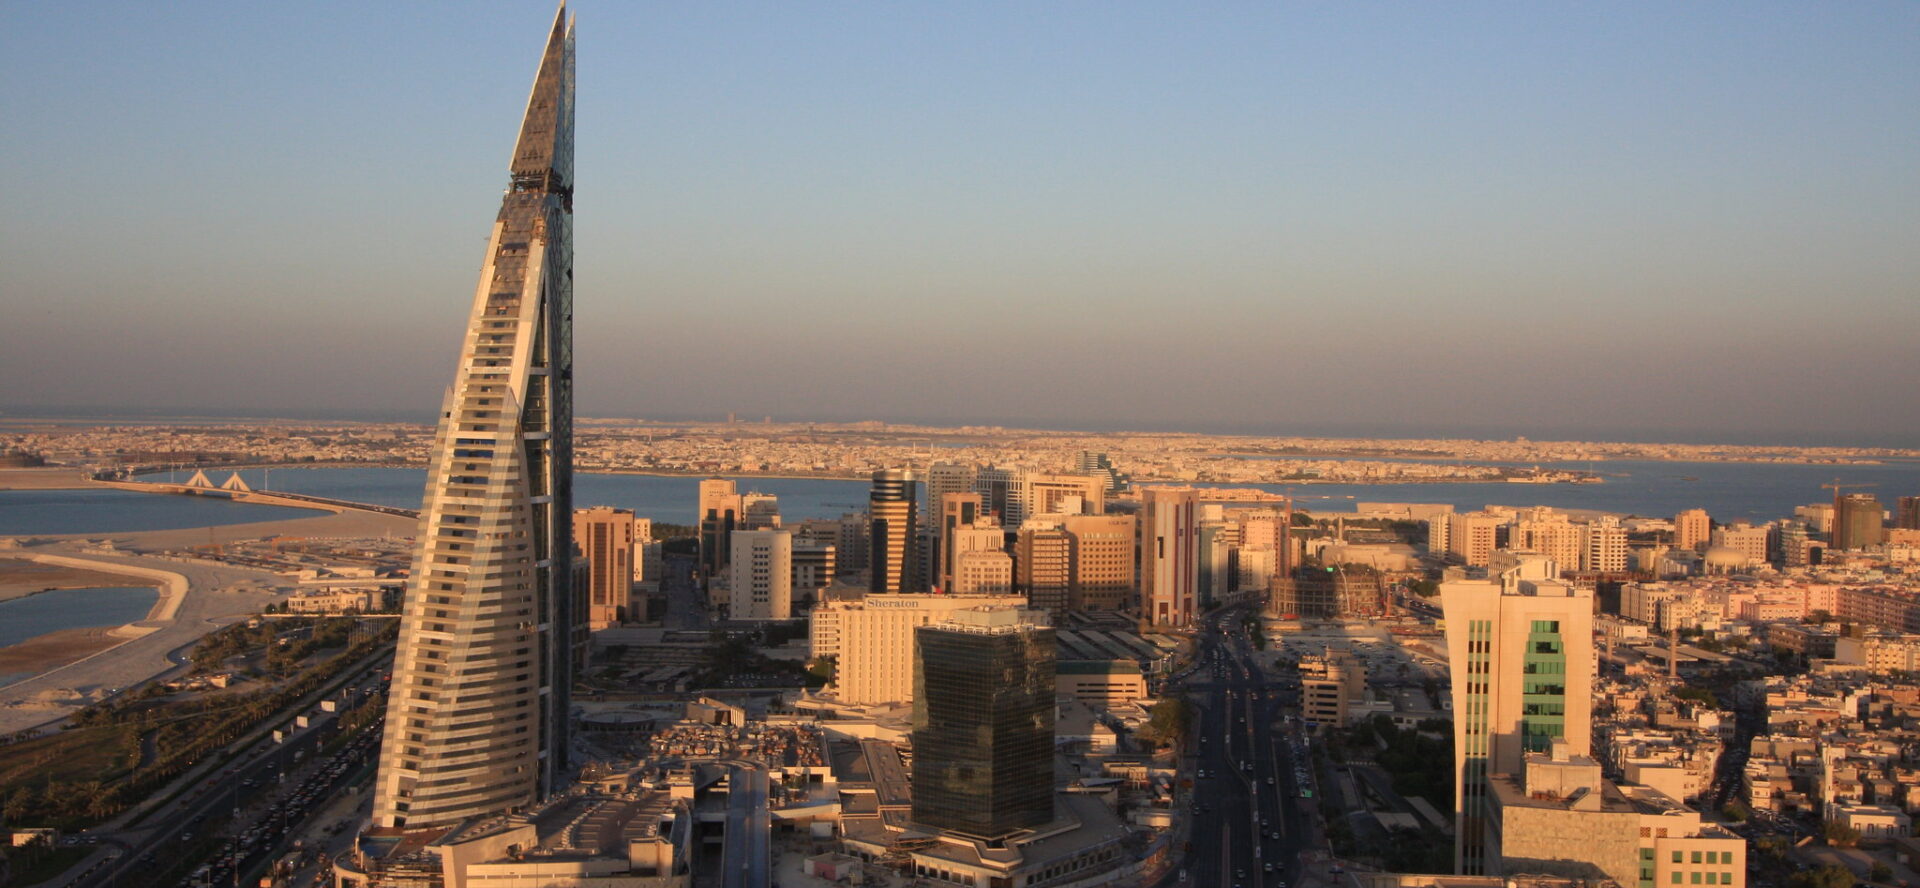 Le Bahreïn est-il réellement le "bon élève" des droits humains dans le Golfe? Vue de Manama, la capitale du Bahreïn © Chris Price/Flickr/CC BY-ND 2.0